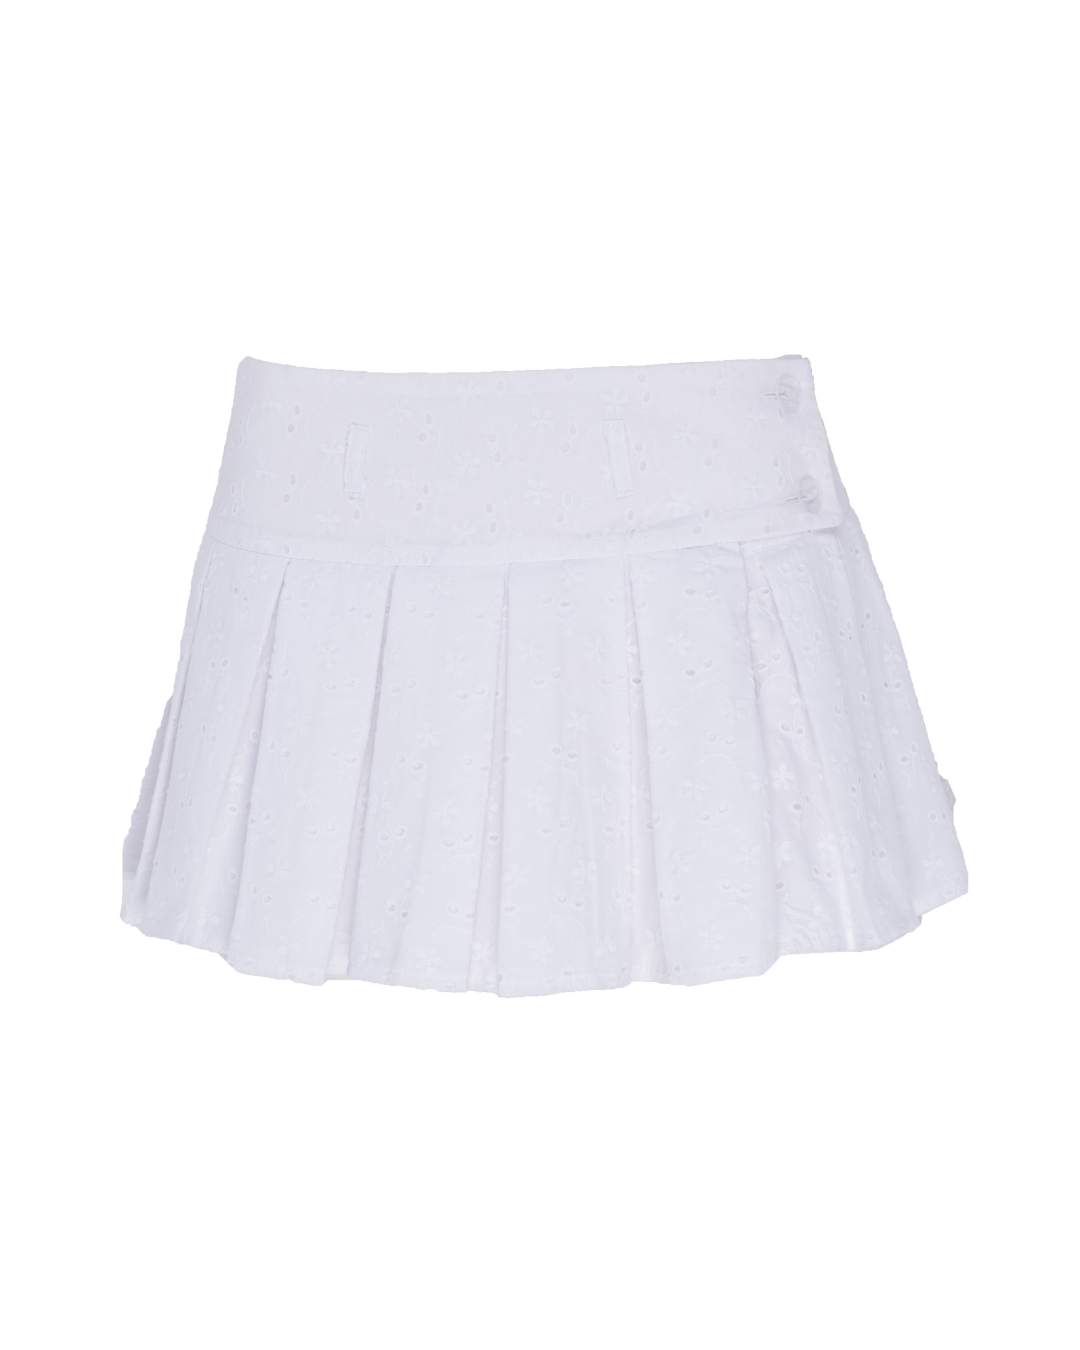 remass x flossie: the emma - skirt